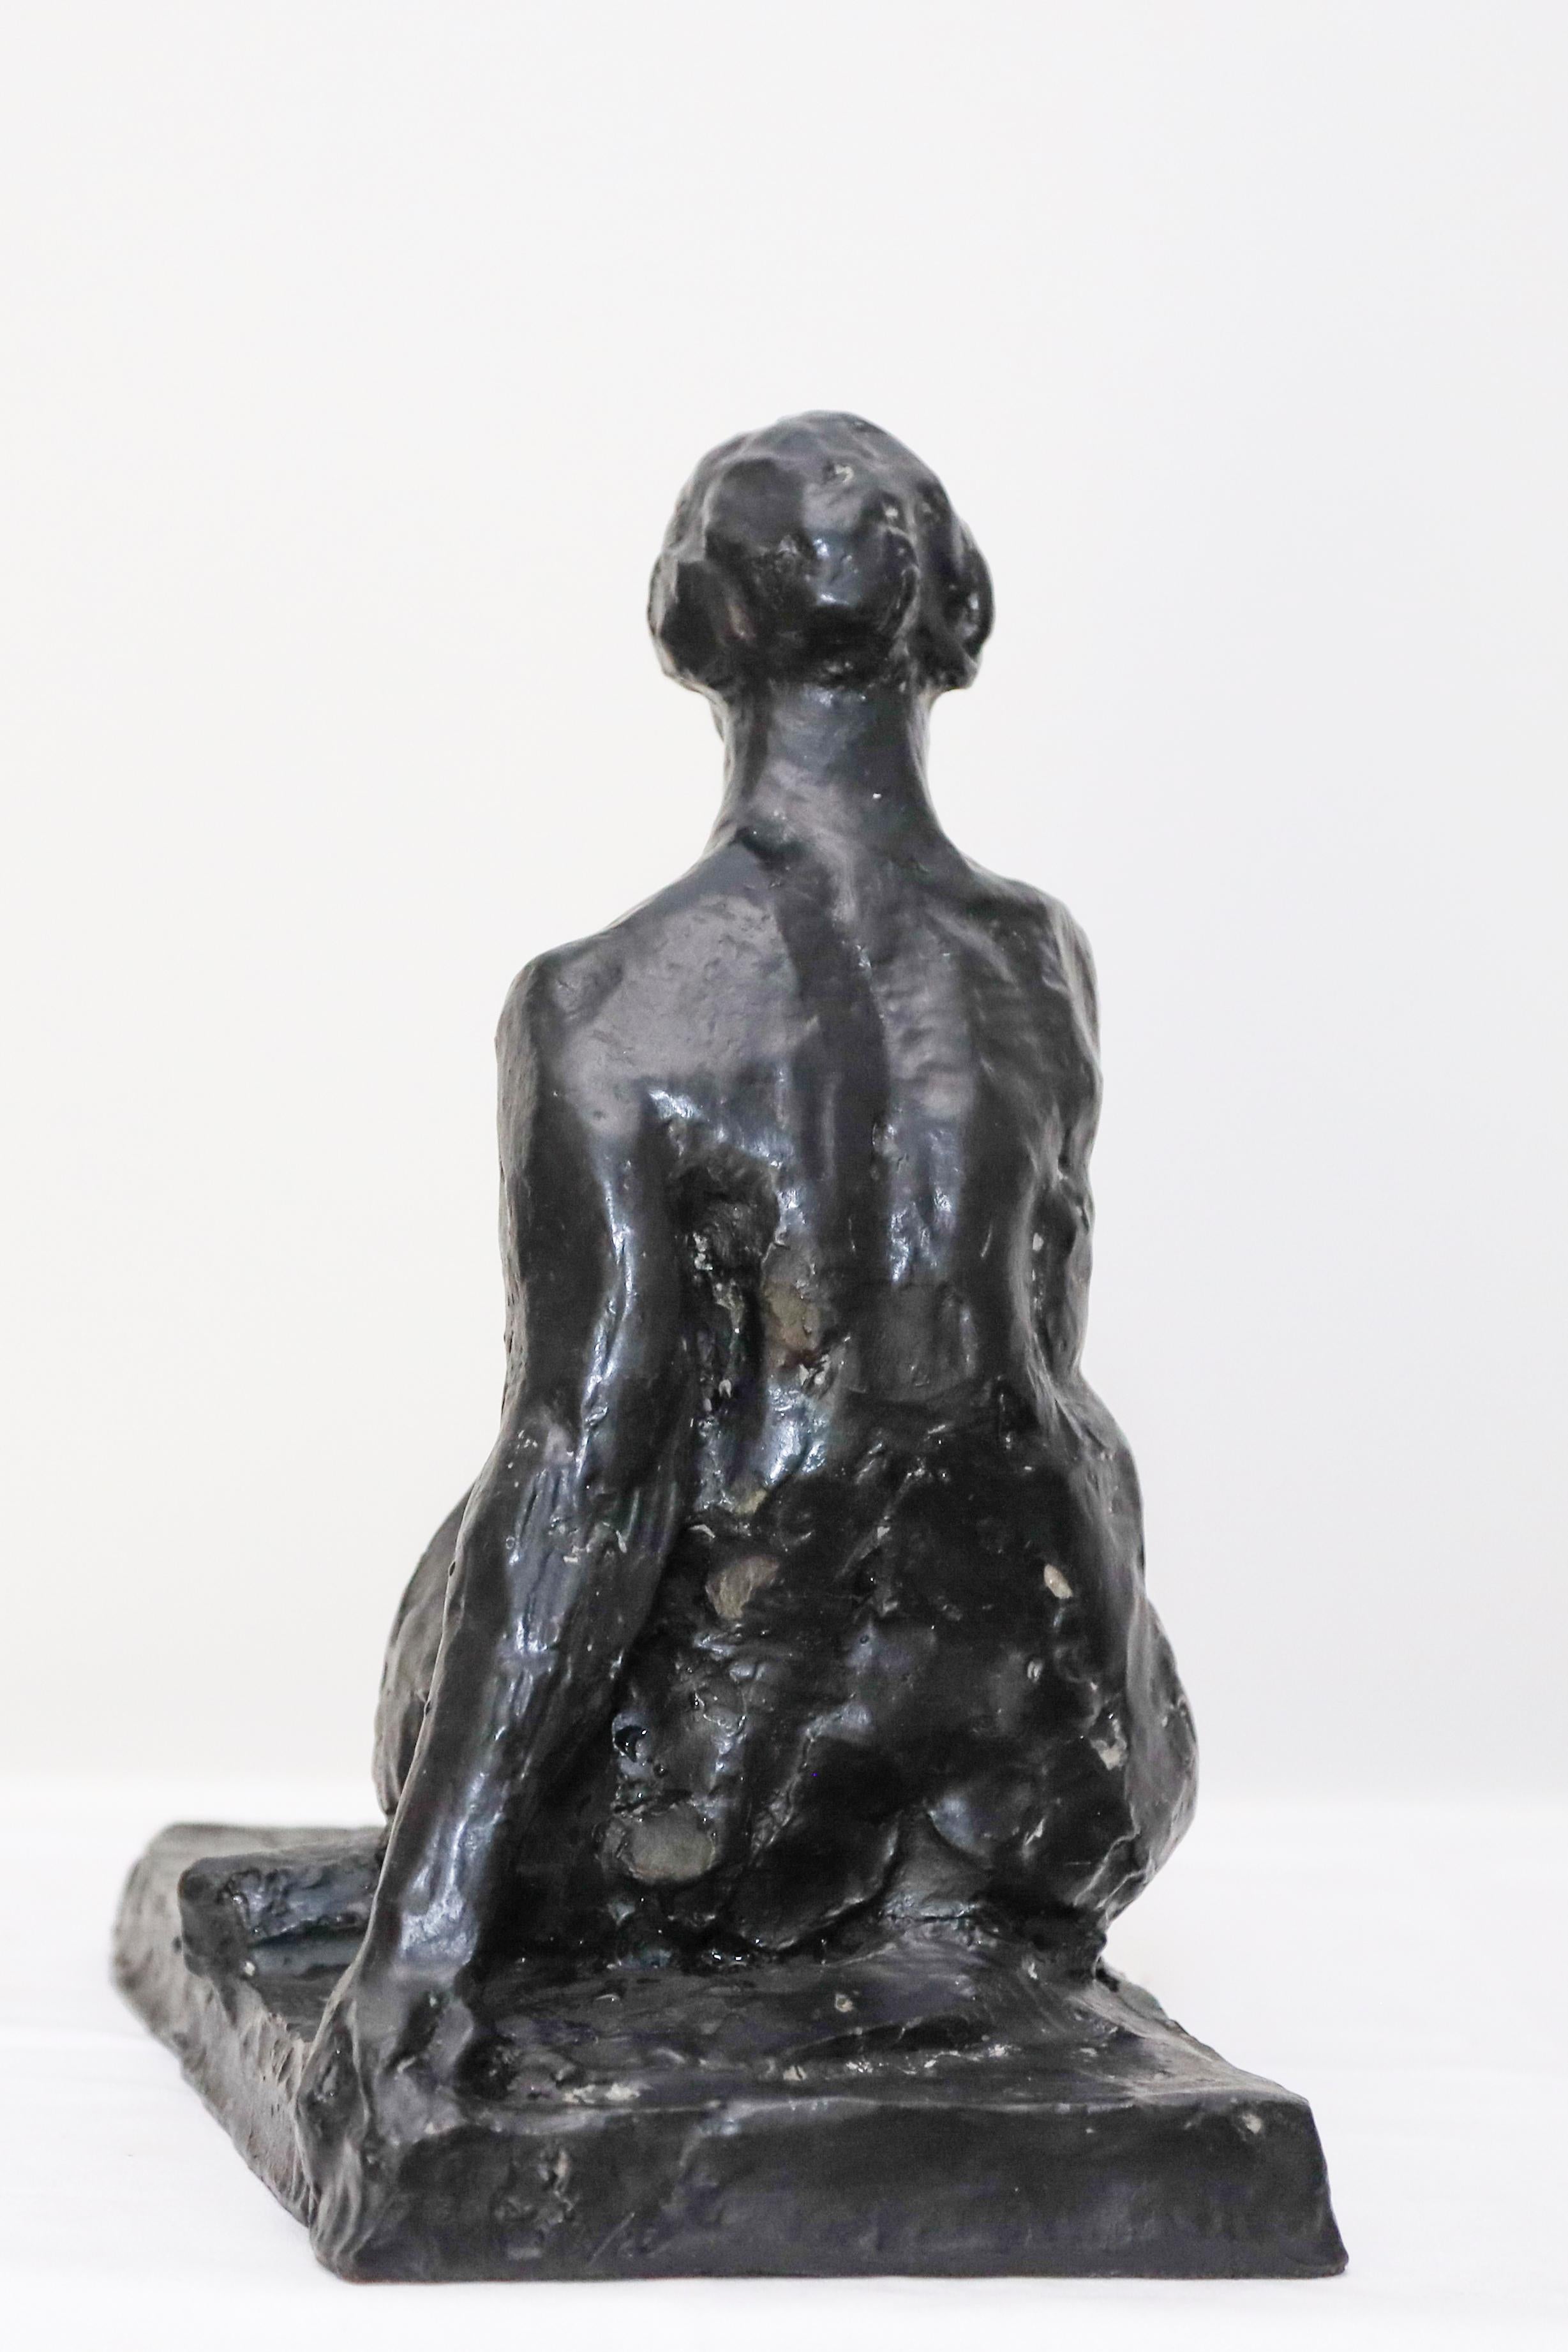 La sculpture en bronze d'une femme de Charles Rumsey n'est pas datée, mais elle a été créée à un moment de sa carrière où il a commencé à passer du réalisme à des représentations plus modernes et plus libres des femmes et même de ses sculptures